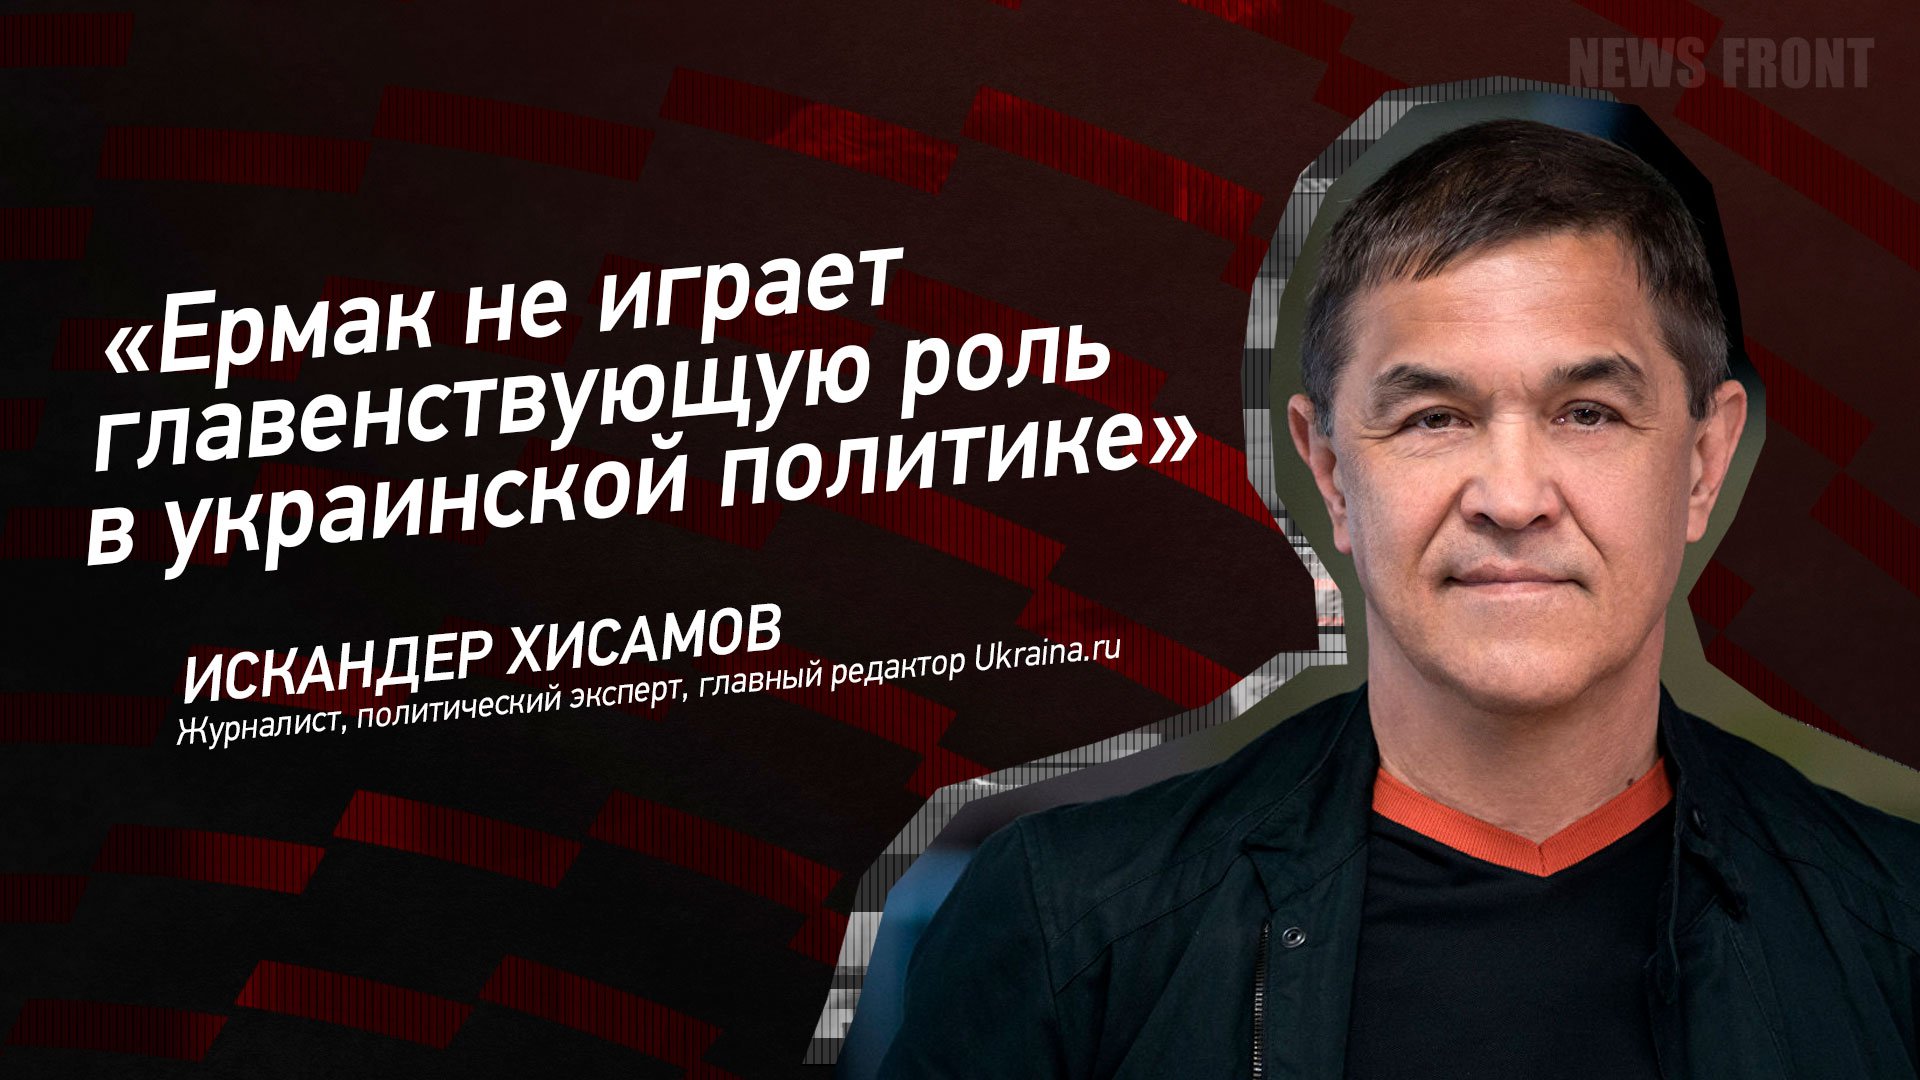 "Ермак не играет главенствующую роль в украинской политике" - Искандер Хисамов